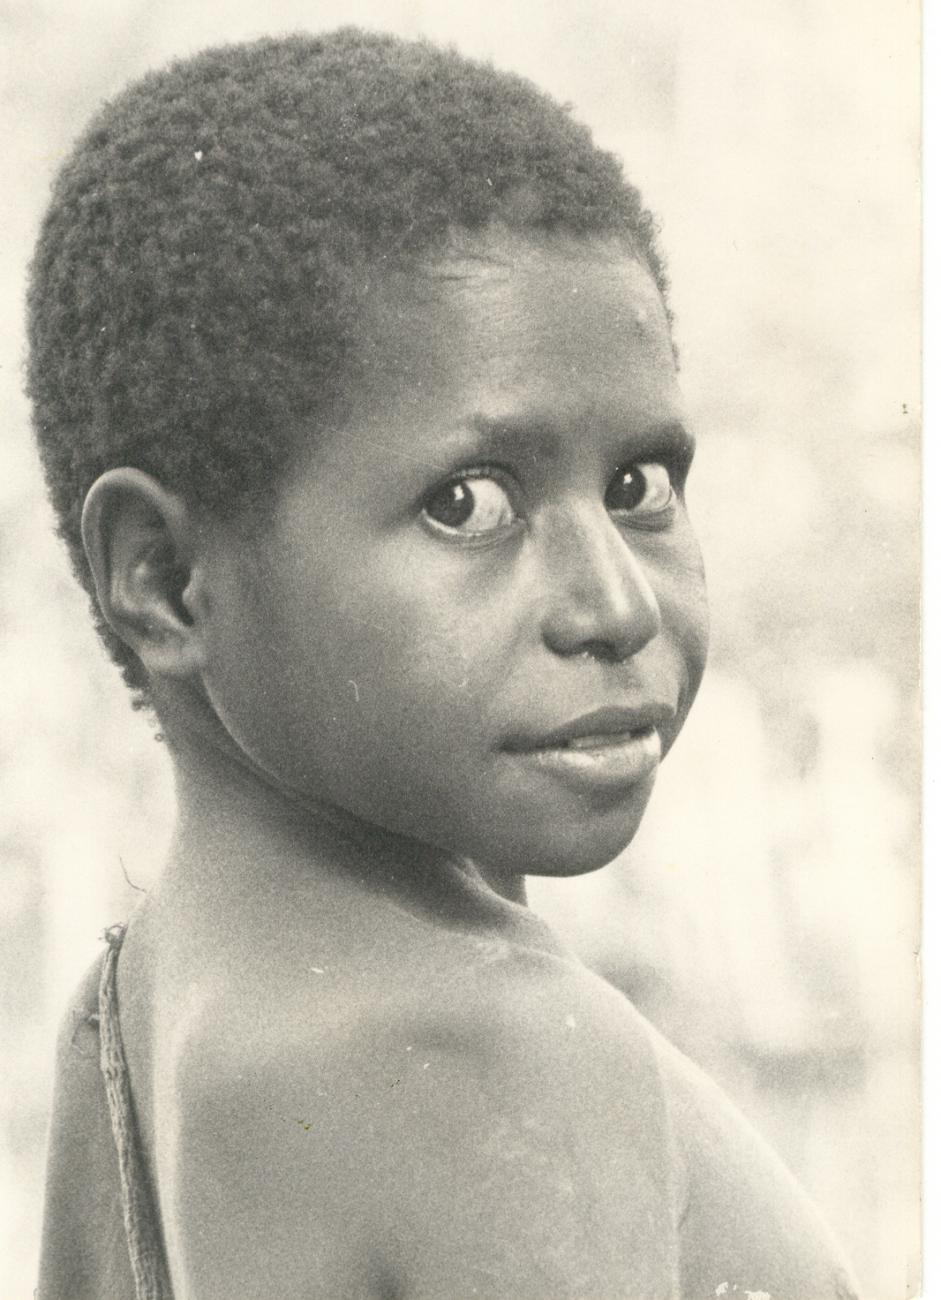 BD/253/100 - 
Portret van een kind
